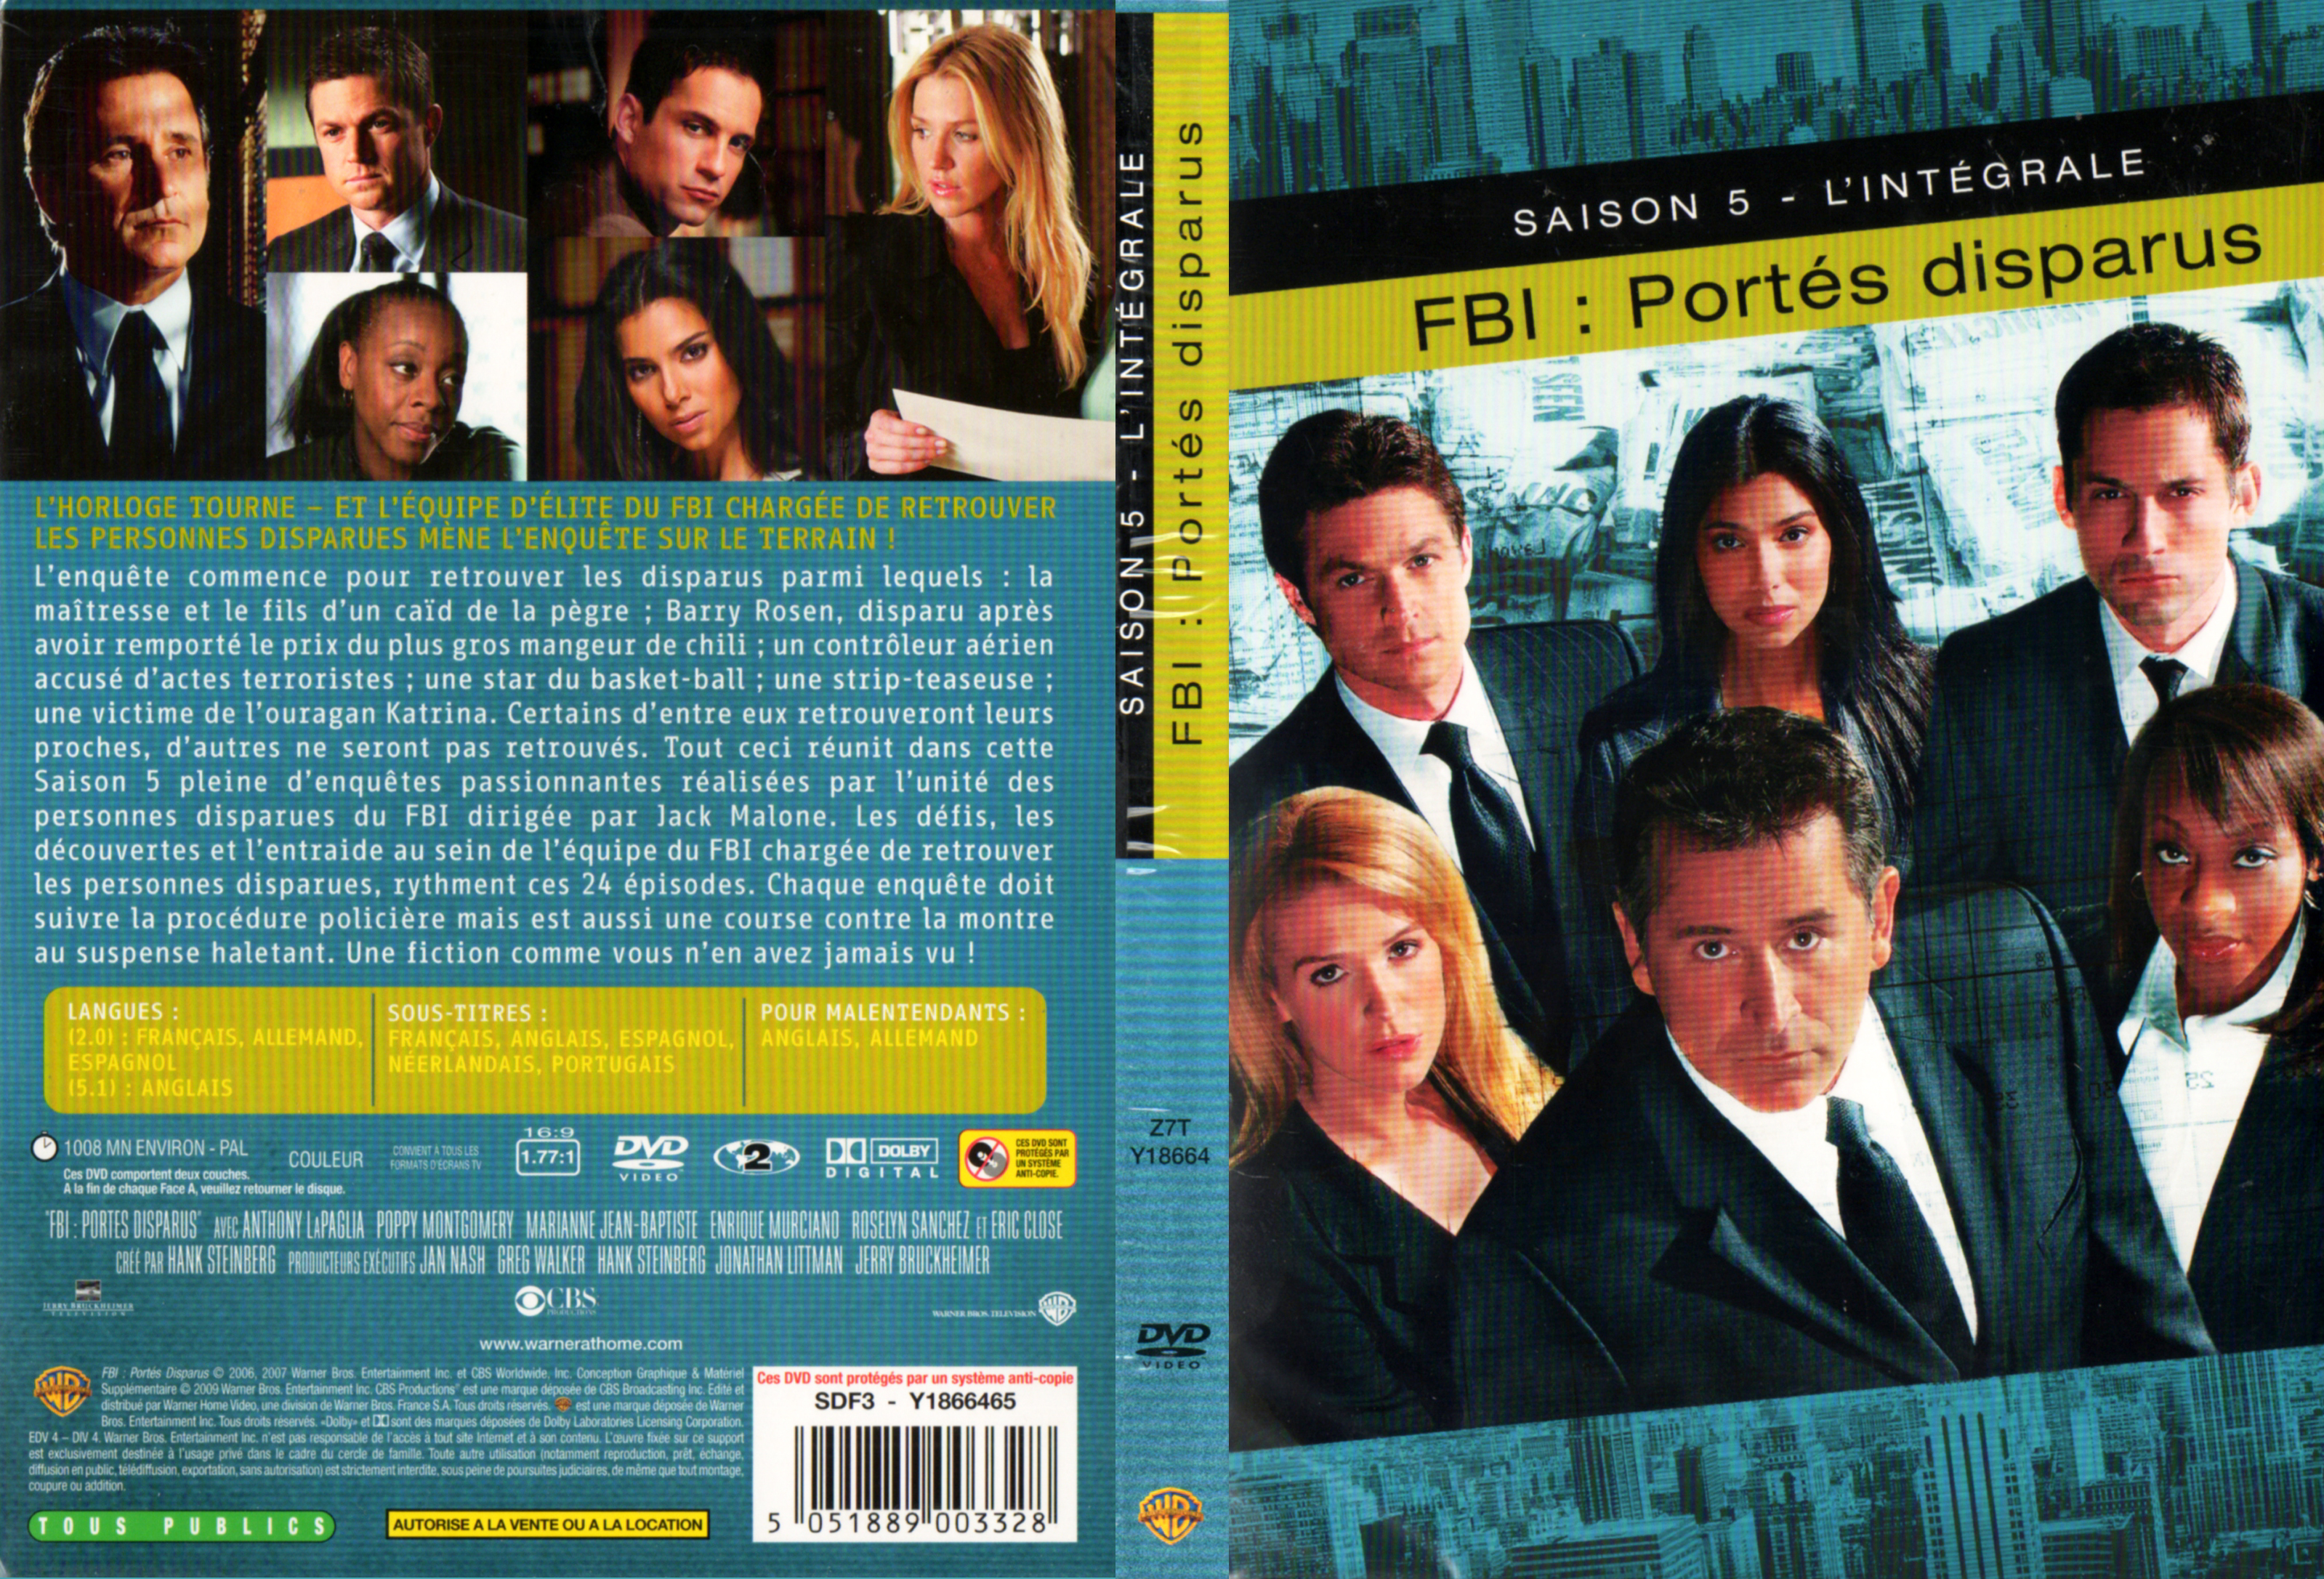 Jaquette DVD FBI portes disparus Saison 5 COFFRET